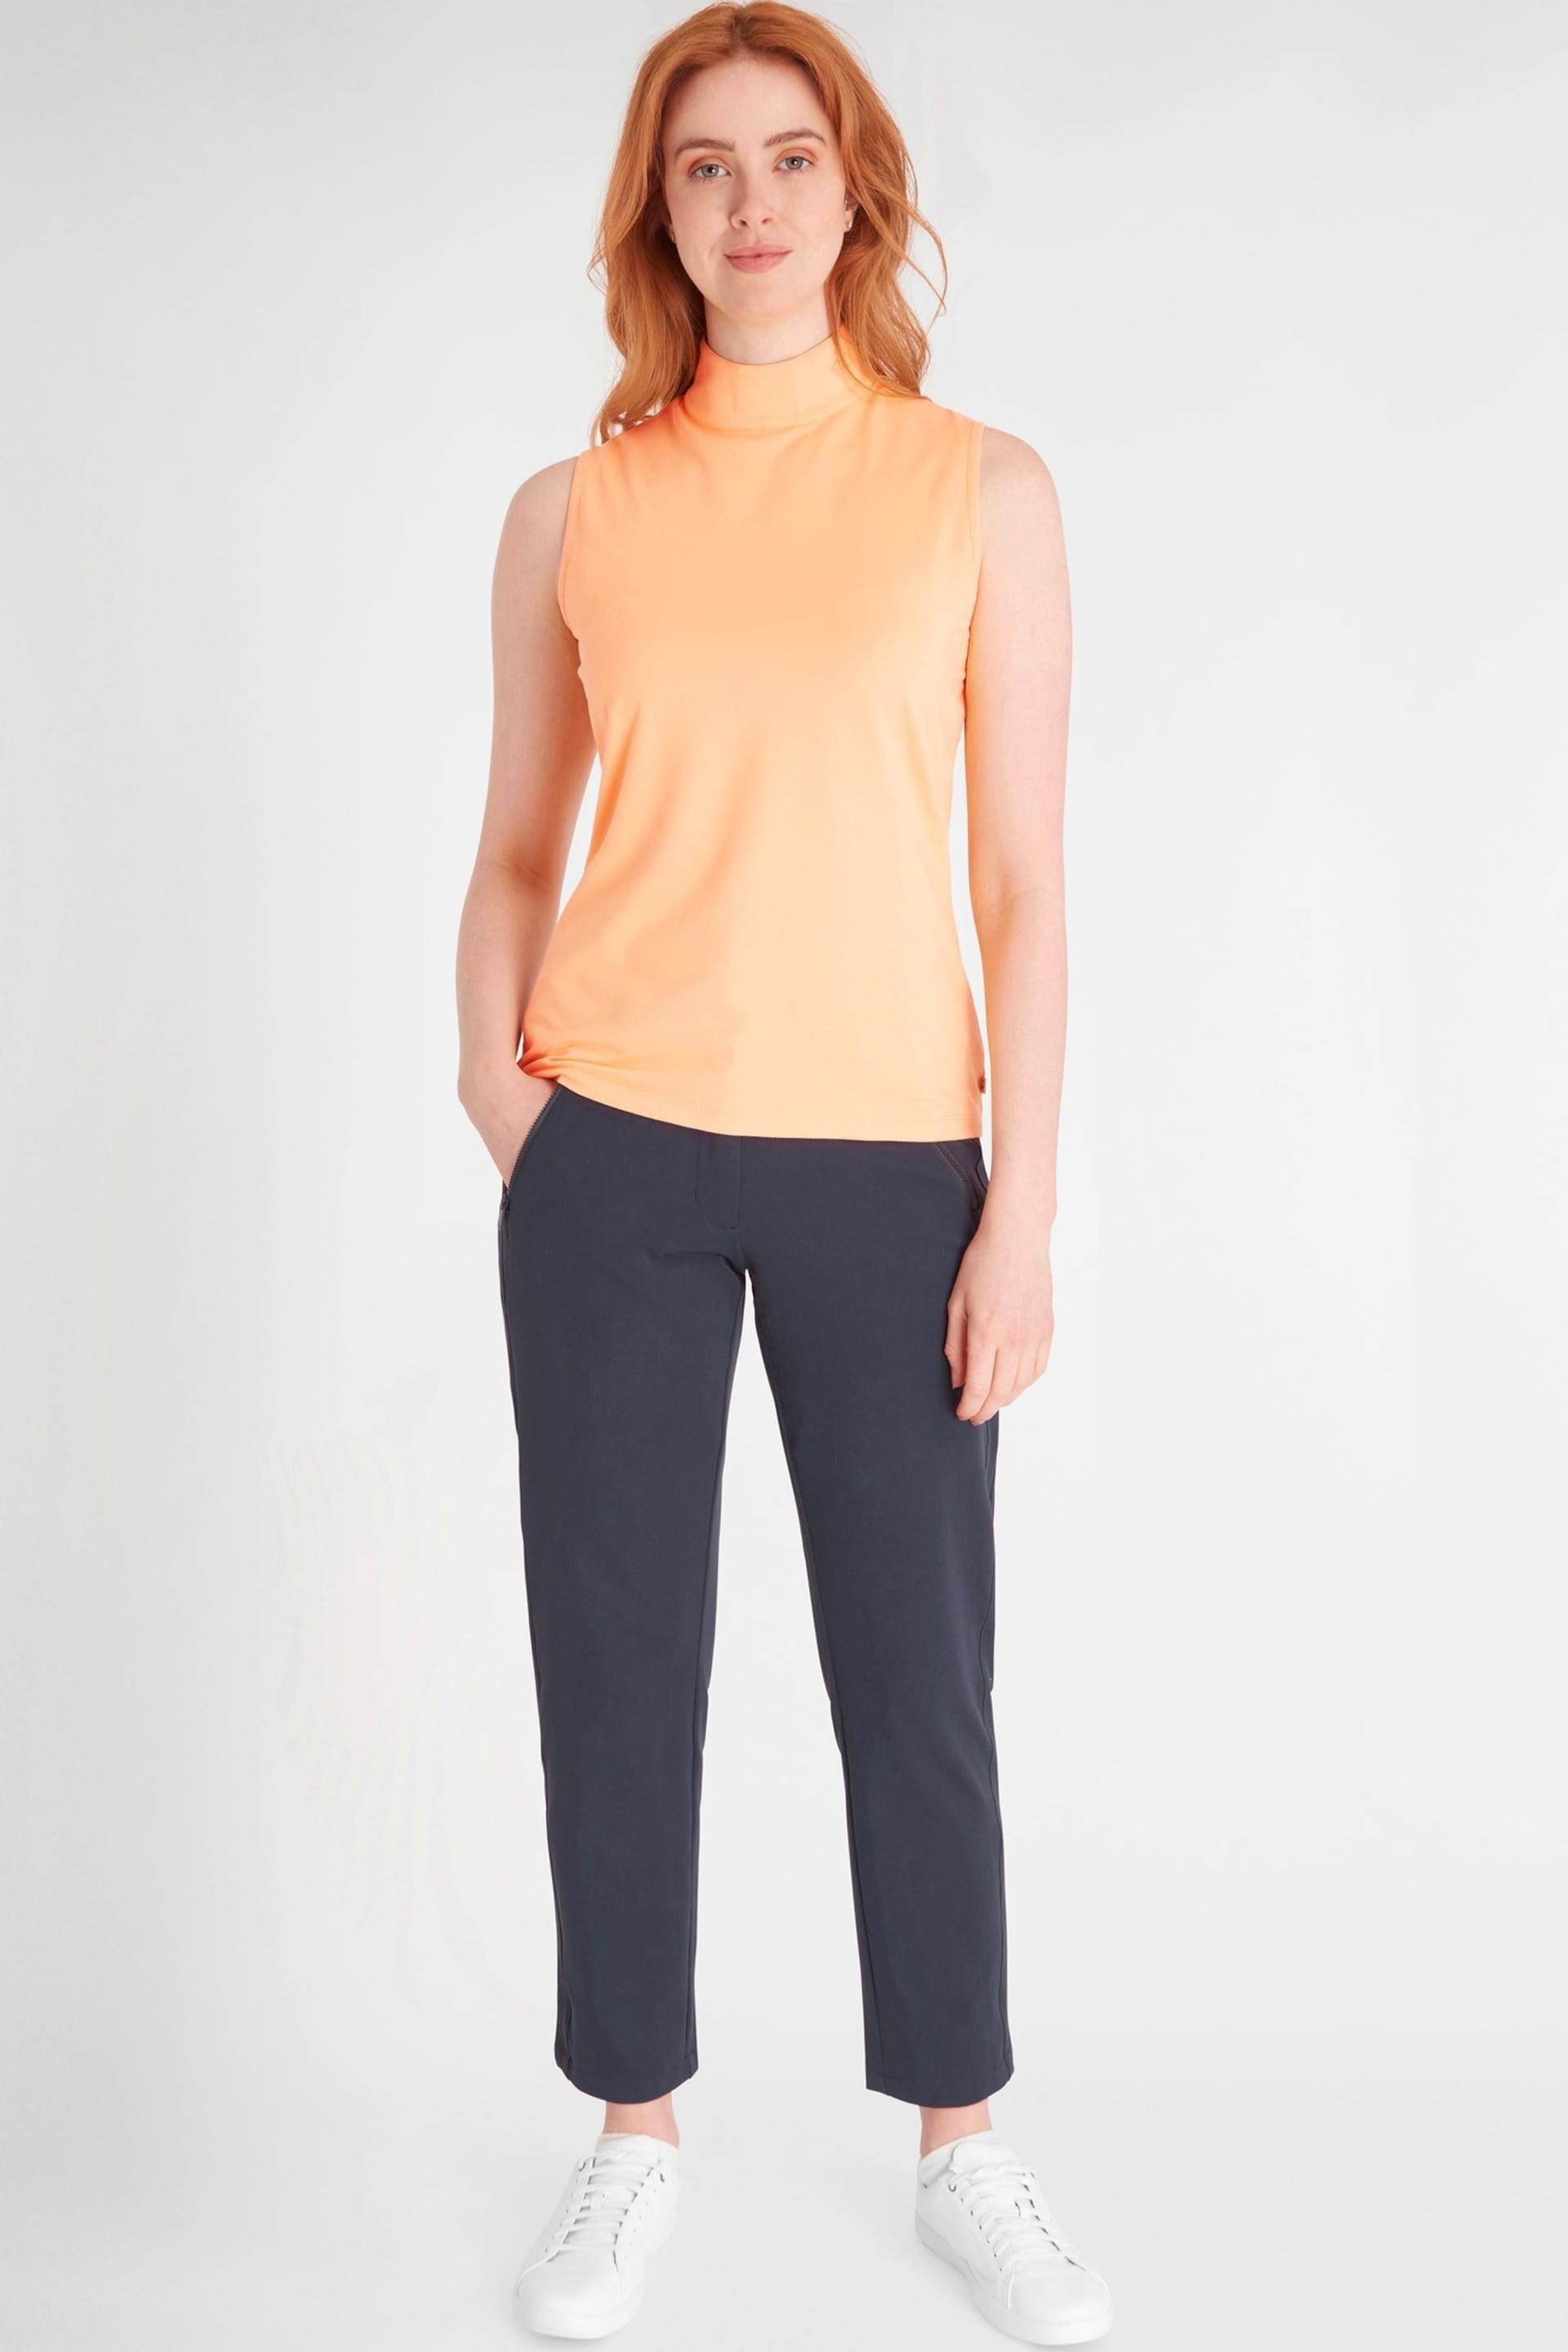 Calvin Klein Golf Orange Skyway Polo Shirt - Image 3 of 8